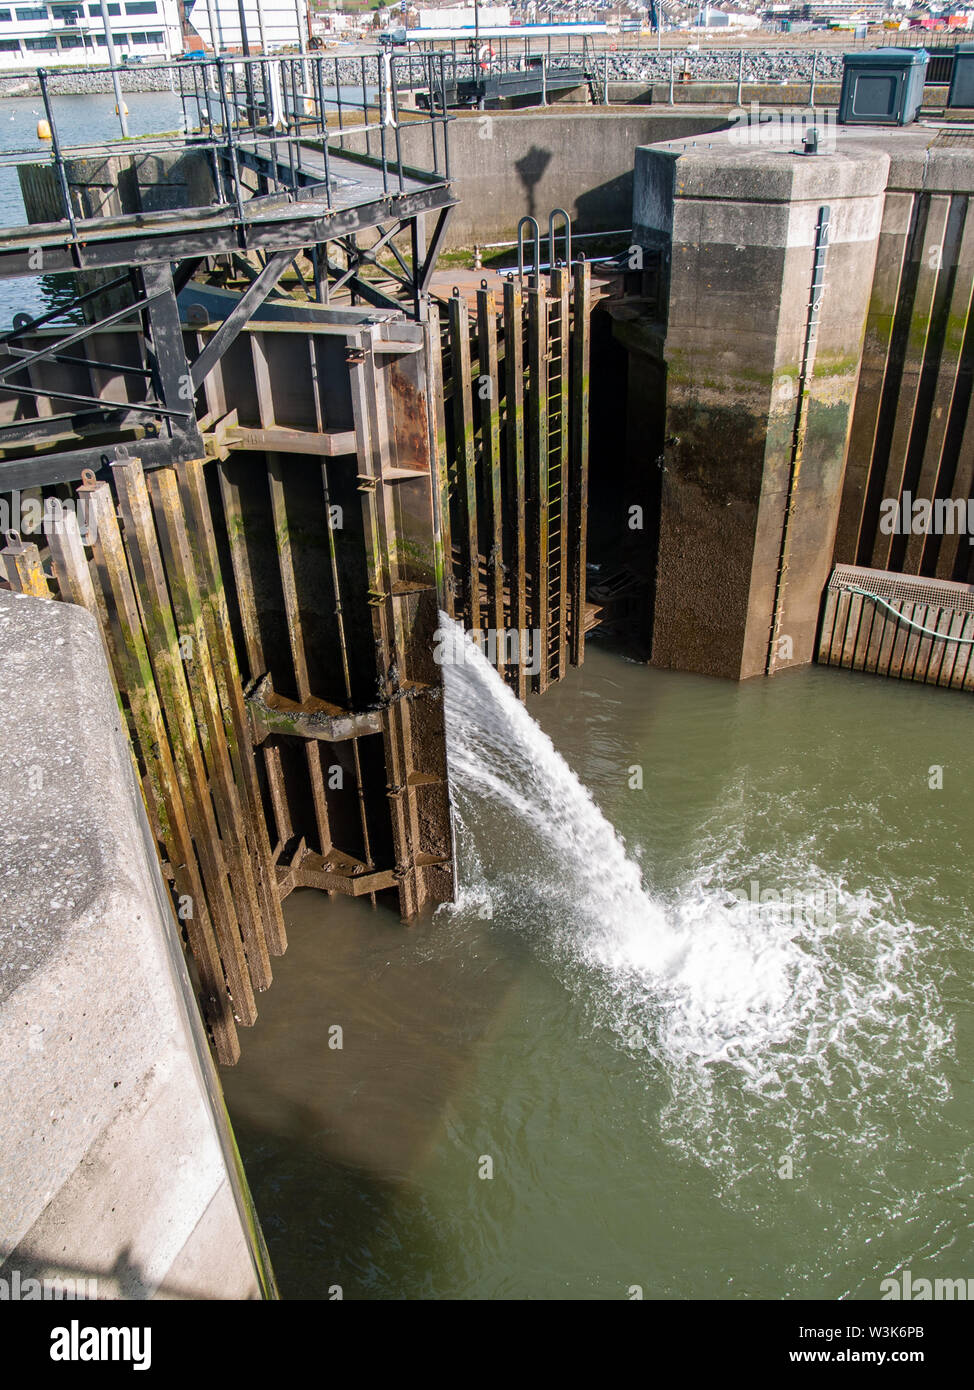 Barrage Tawe Lock à Swansea. Haut de la porte est illustré avec fuite d'eau dans la serrure elle-même. Port de plaisance de Swansea, Pays de Galles, Royaume-Uni. Banque D'Images